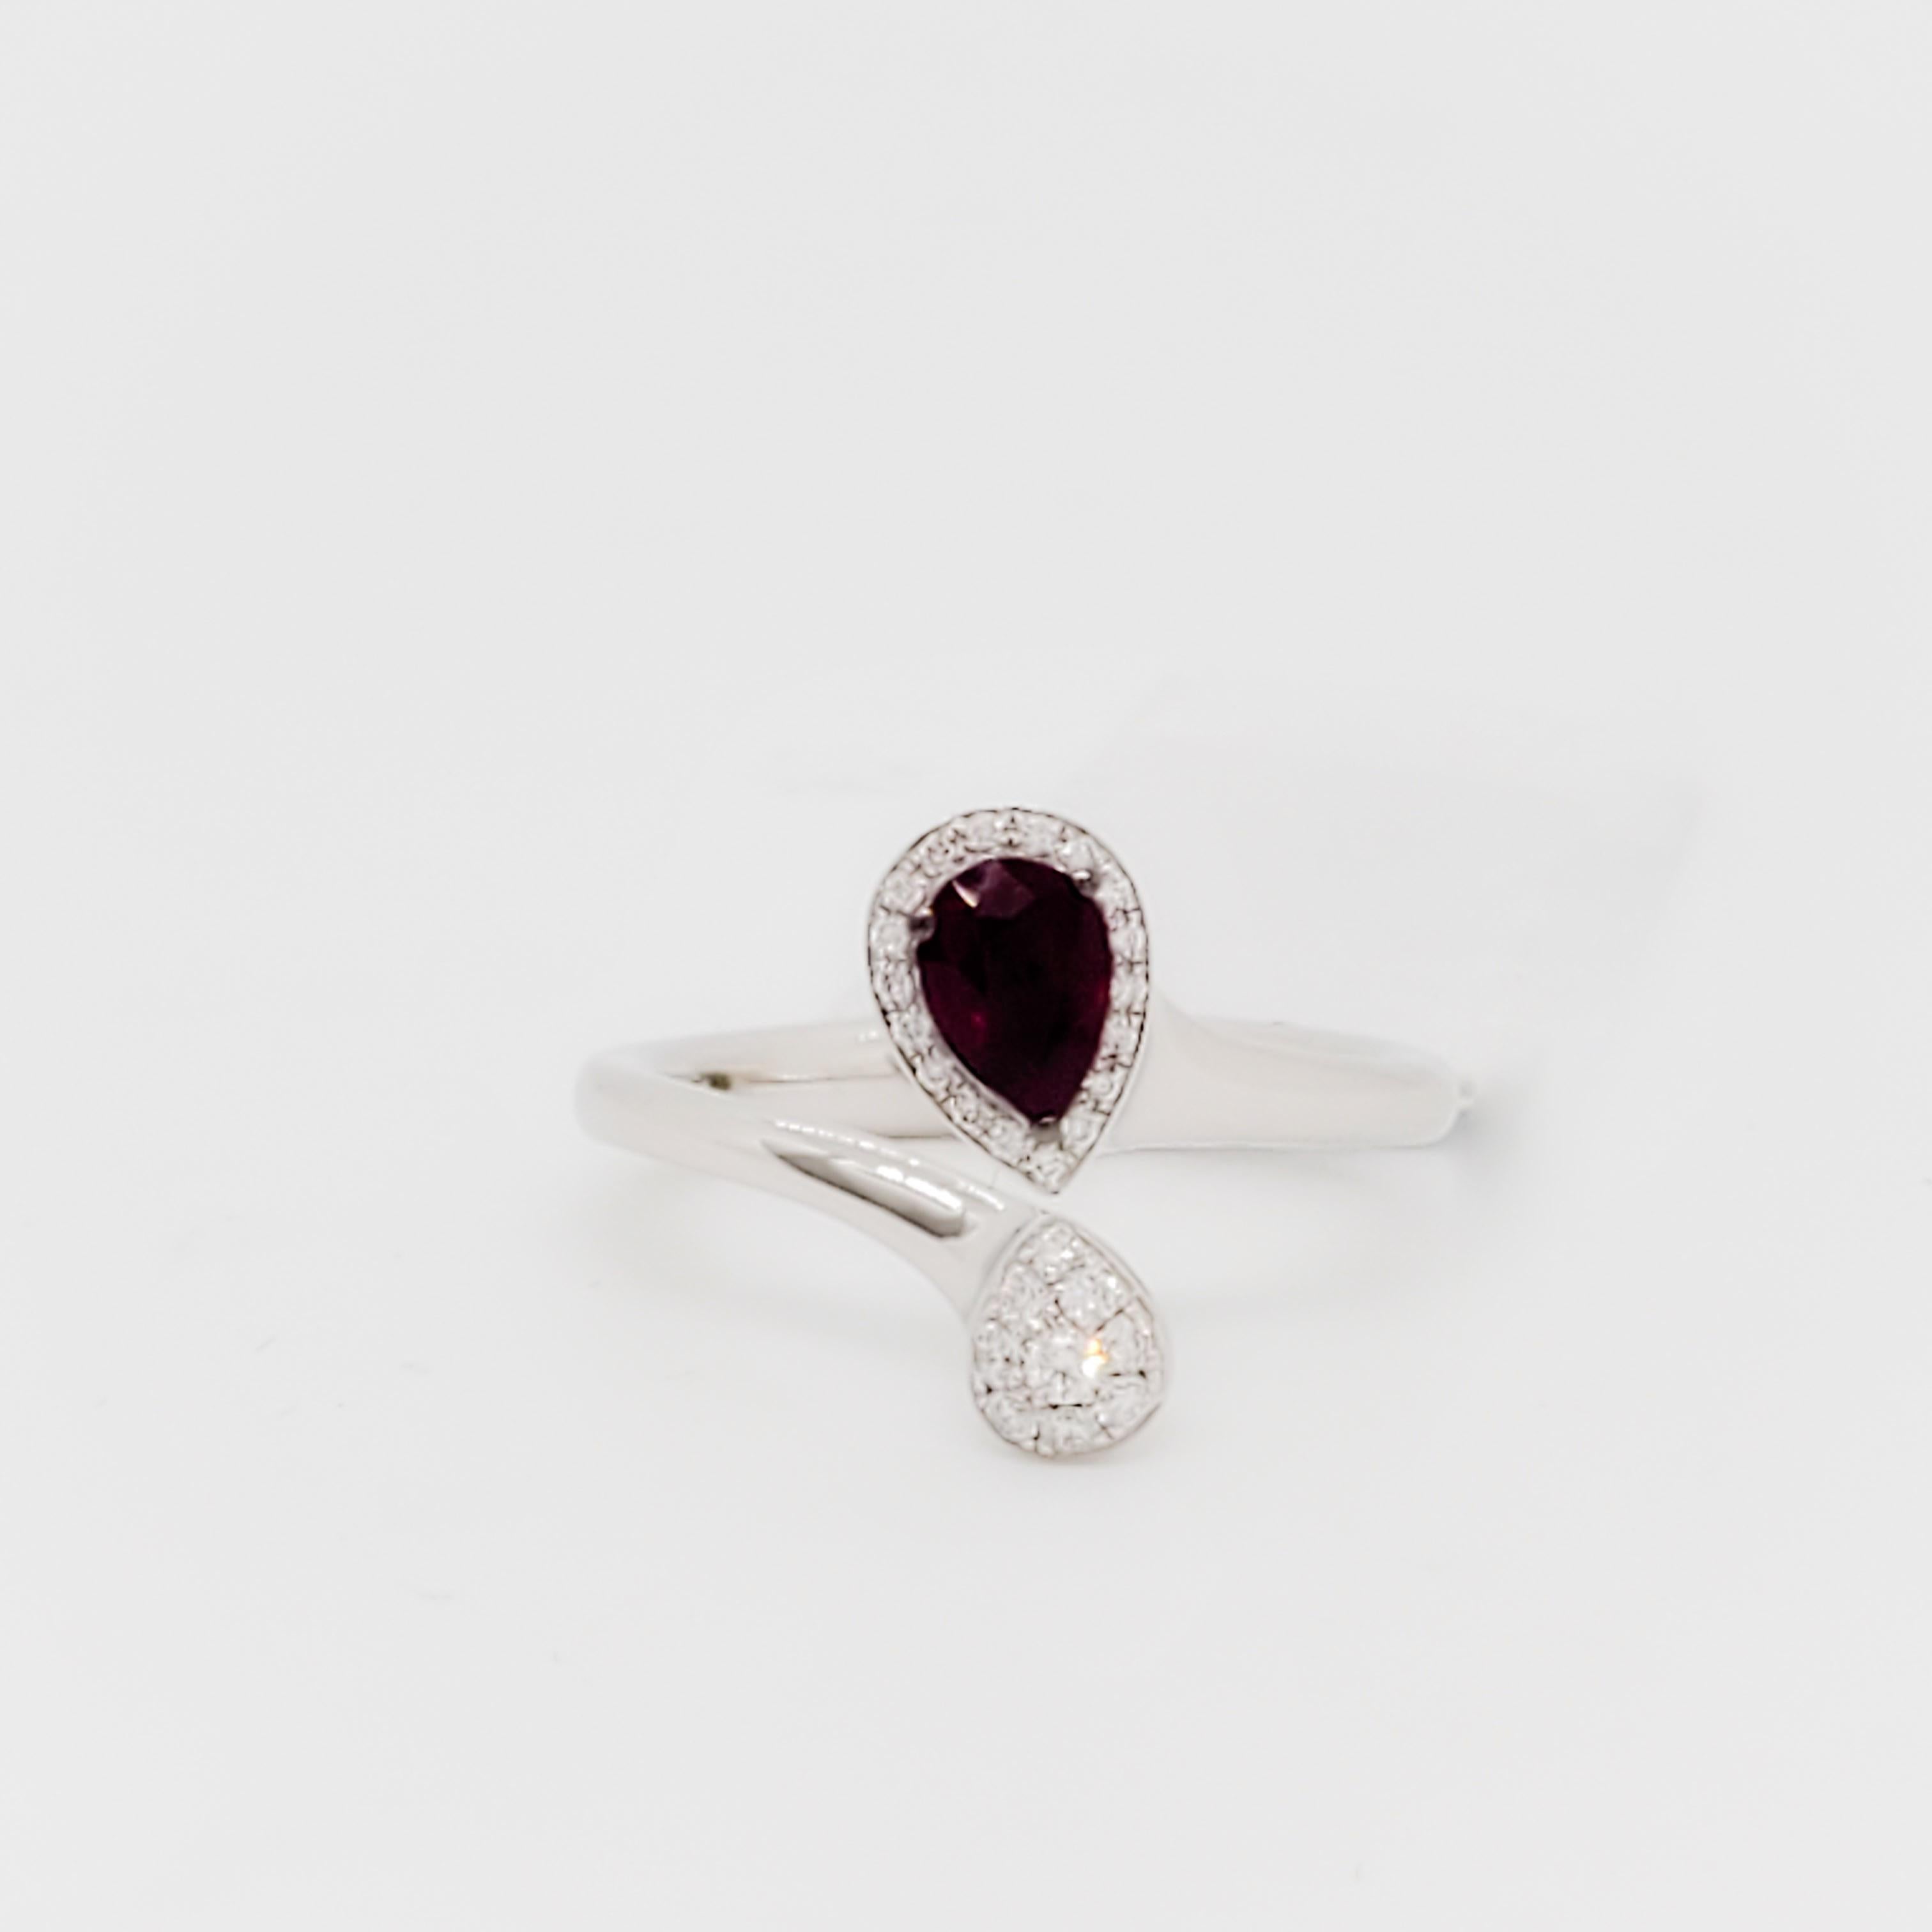 Magnifique collier Giorgio Visconti avec un rubis en forme de poire de 0,05 ct. et des diamants blancs ronds de 0,14 ct.  Fabriqué à la main en Italie en or blanc 18 carats.  